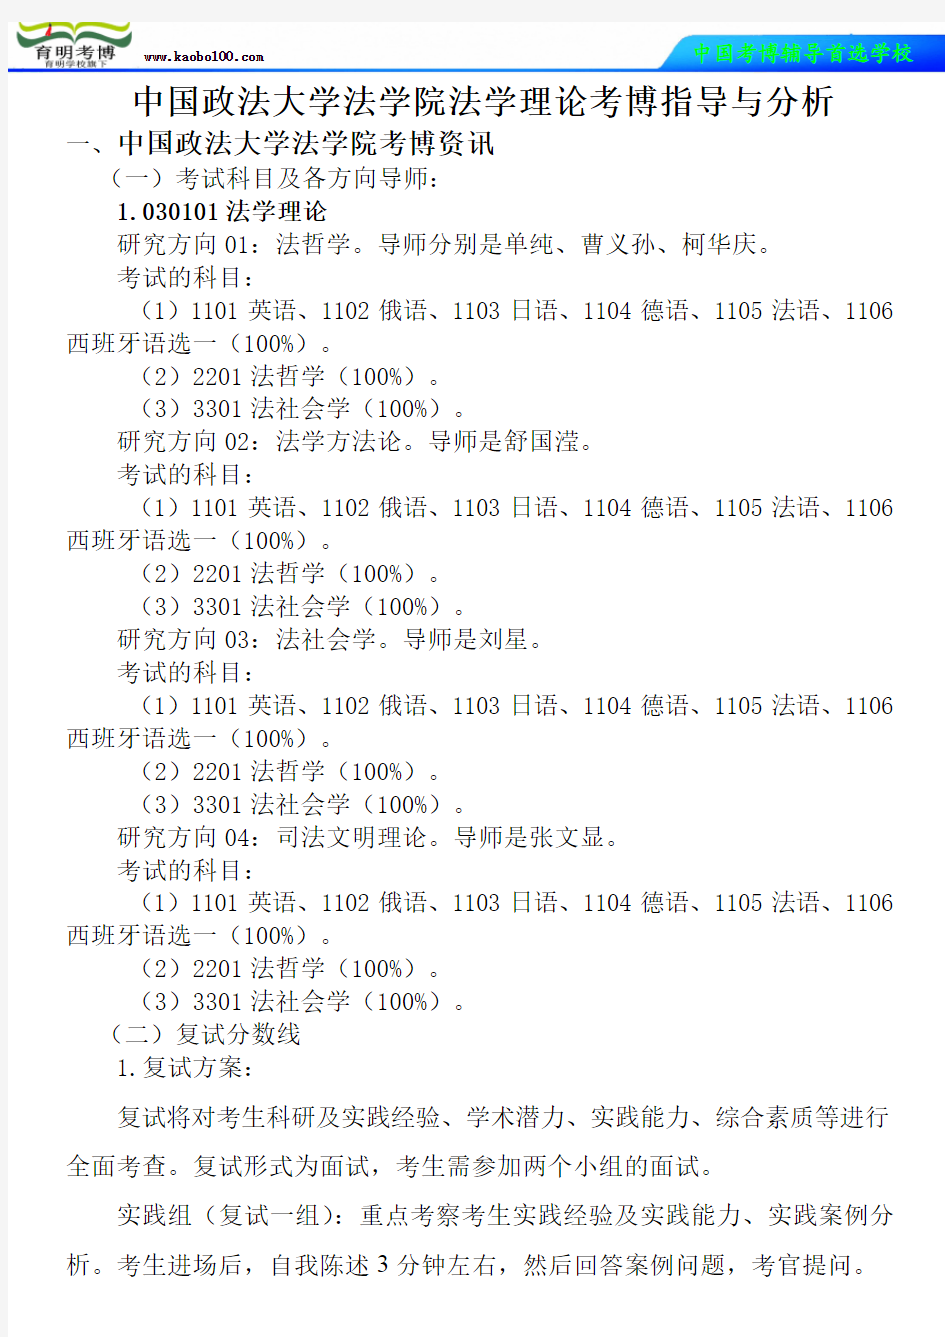 中国政法大学法学院法学理论考博真题-参考书-分数线-分析资料-复习方法-育明考博